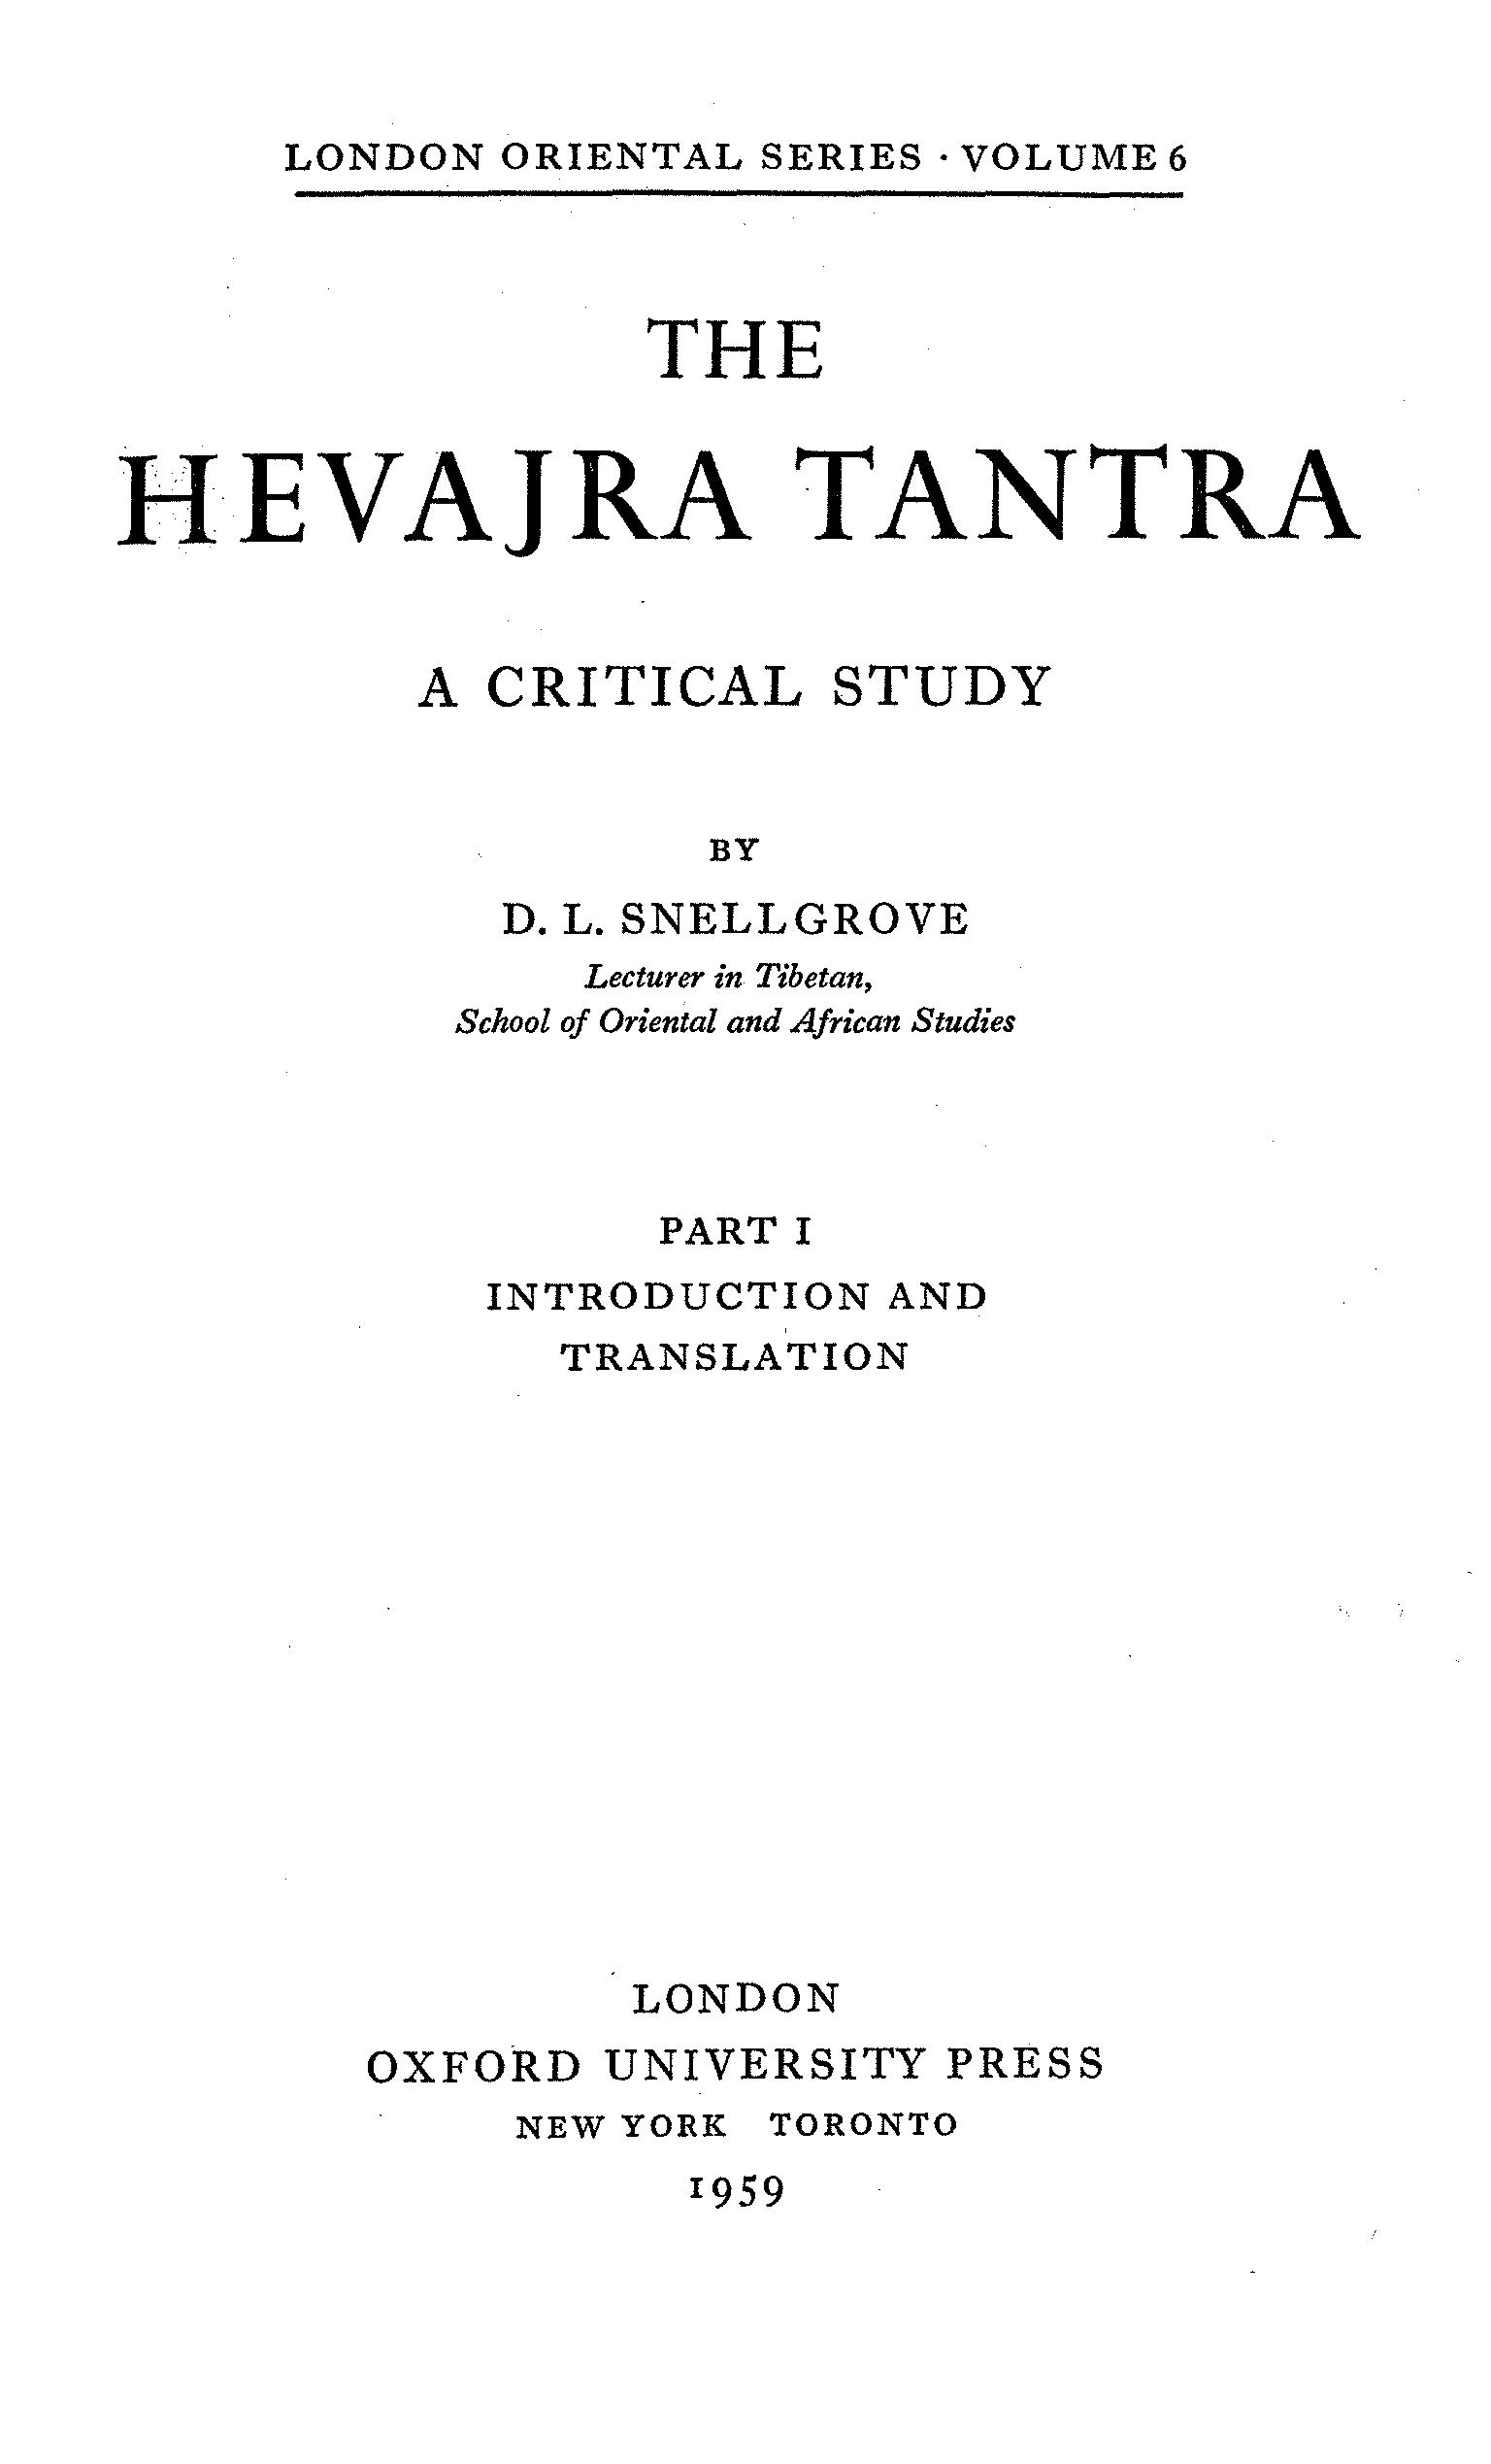 Hevajra Tantra Vol. 1 (Snellgrove 1959)-front.jpg